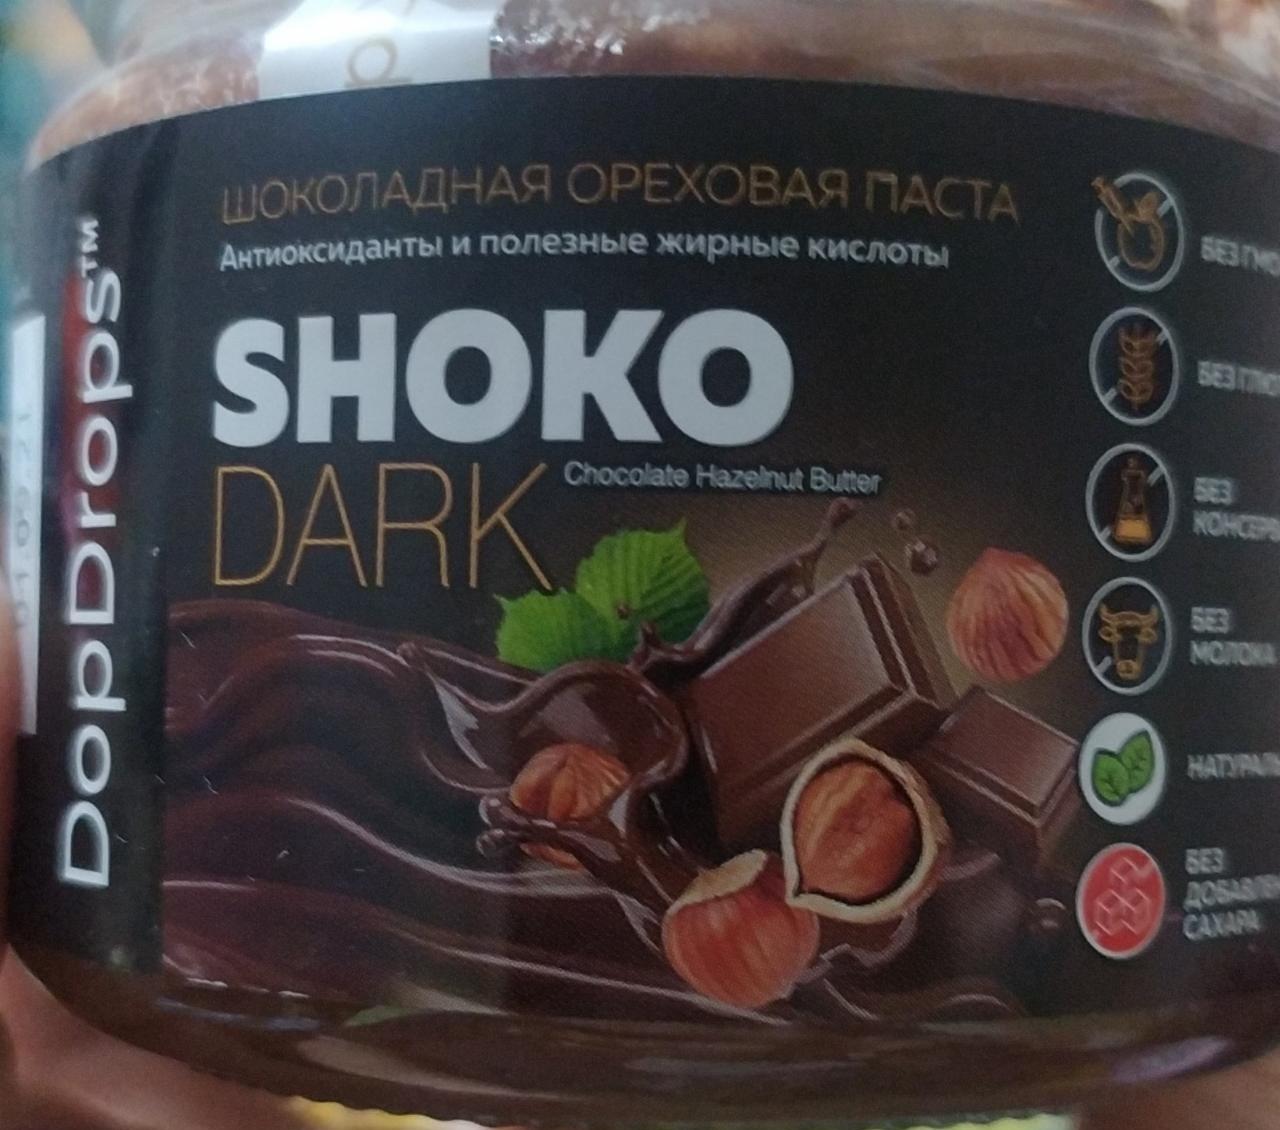 Фото - Шоколадная ореховая паста Shoko dark без добавления сахара DopDrops